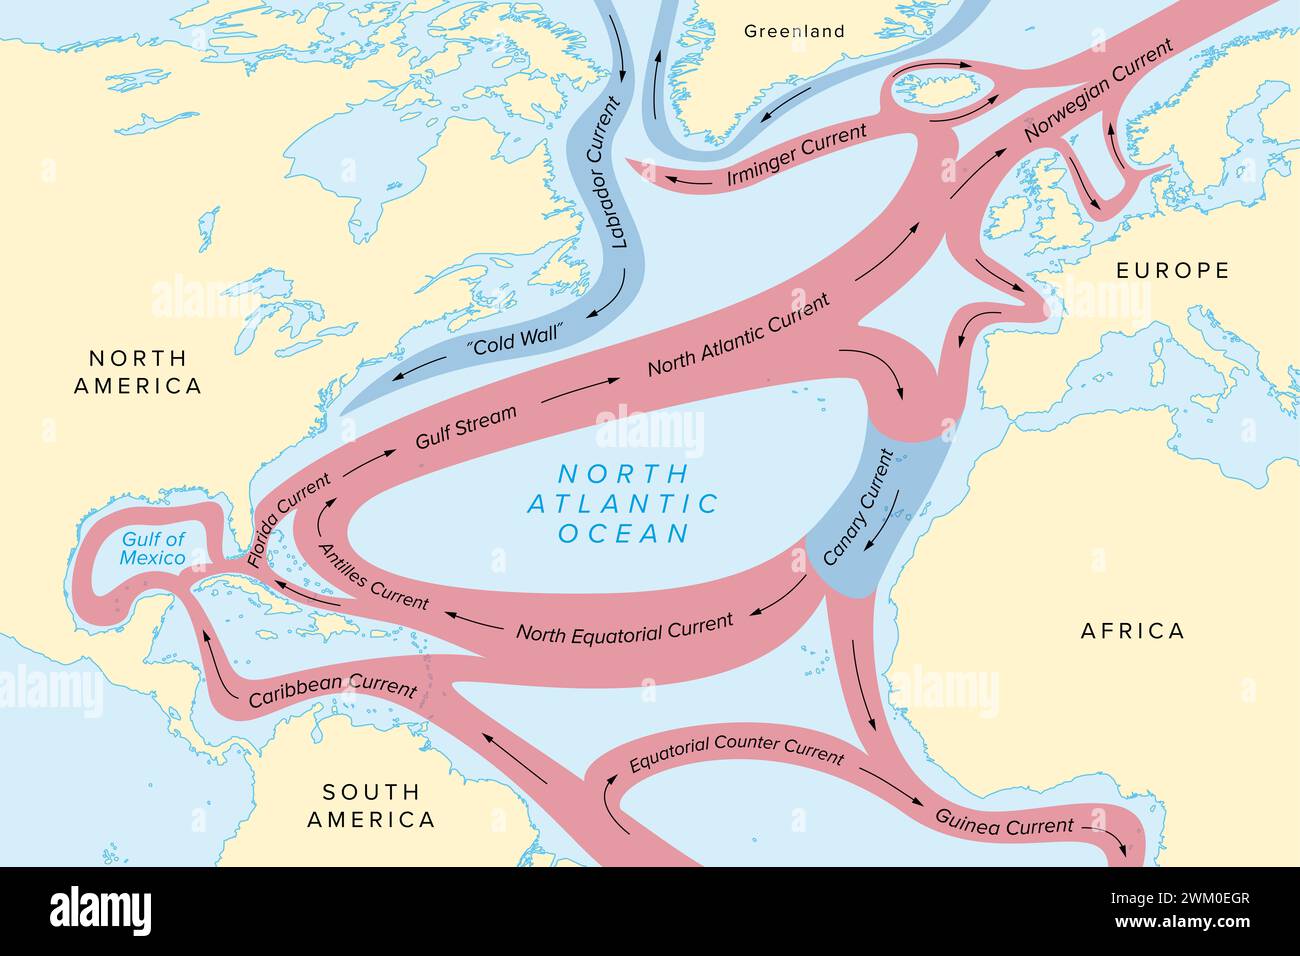 Mappa delle correnti dell'Oceano Atlantico settentrionale, con la corrente del Golfo e altre correnti oceaniche principali, colore rosso per il colore caldo e blu per le correnti fredde. Foto Stock